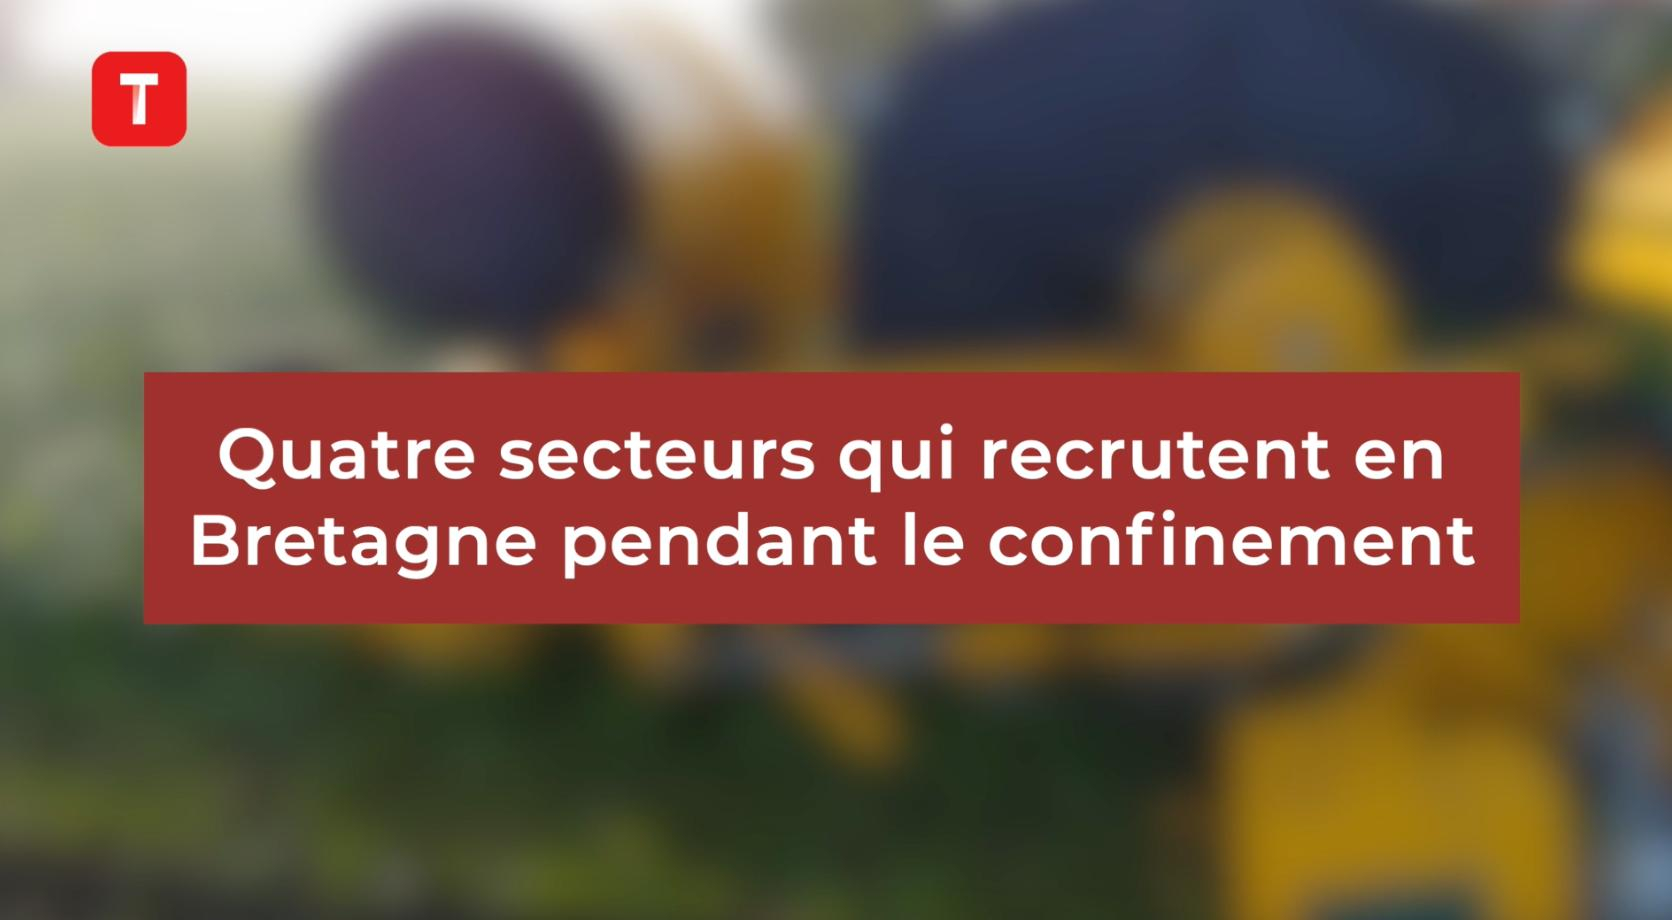 Quatre secteurs qui recrutent pendant le confinement en Bretagne (Le Télégramme)